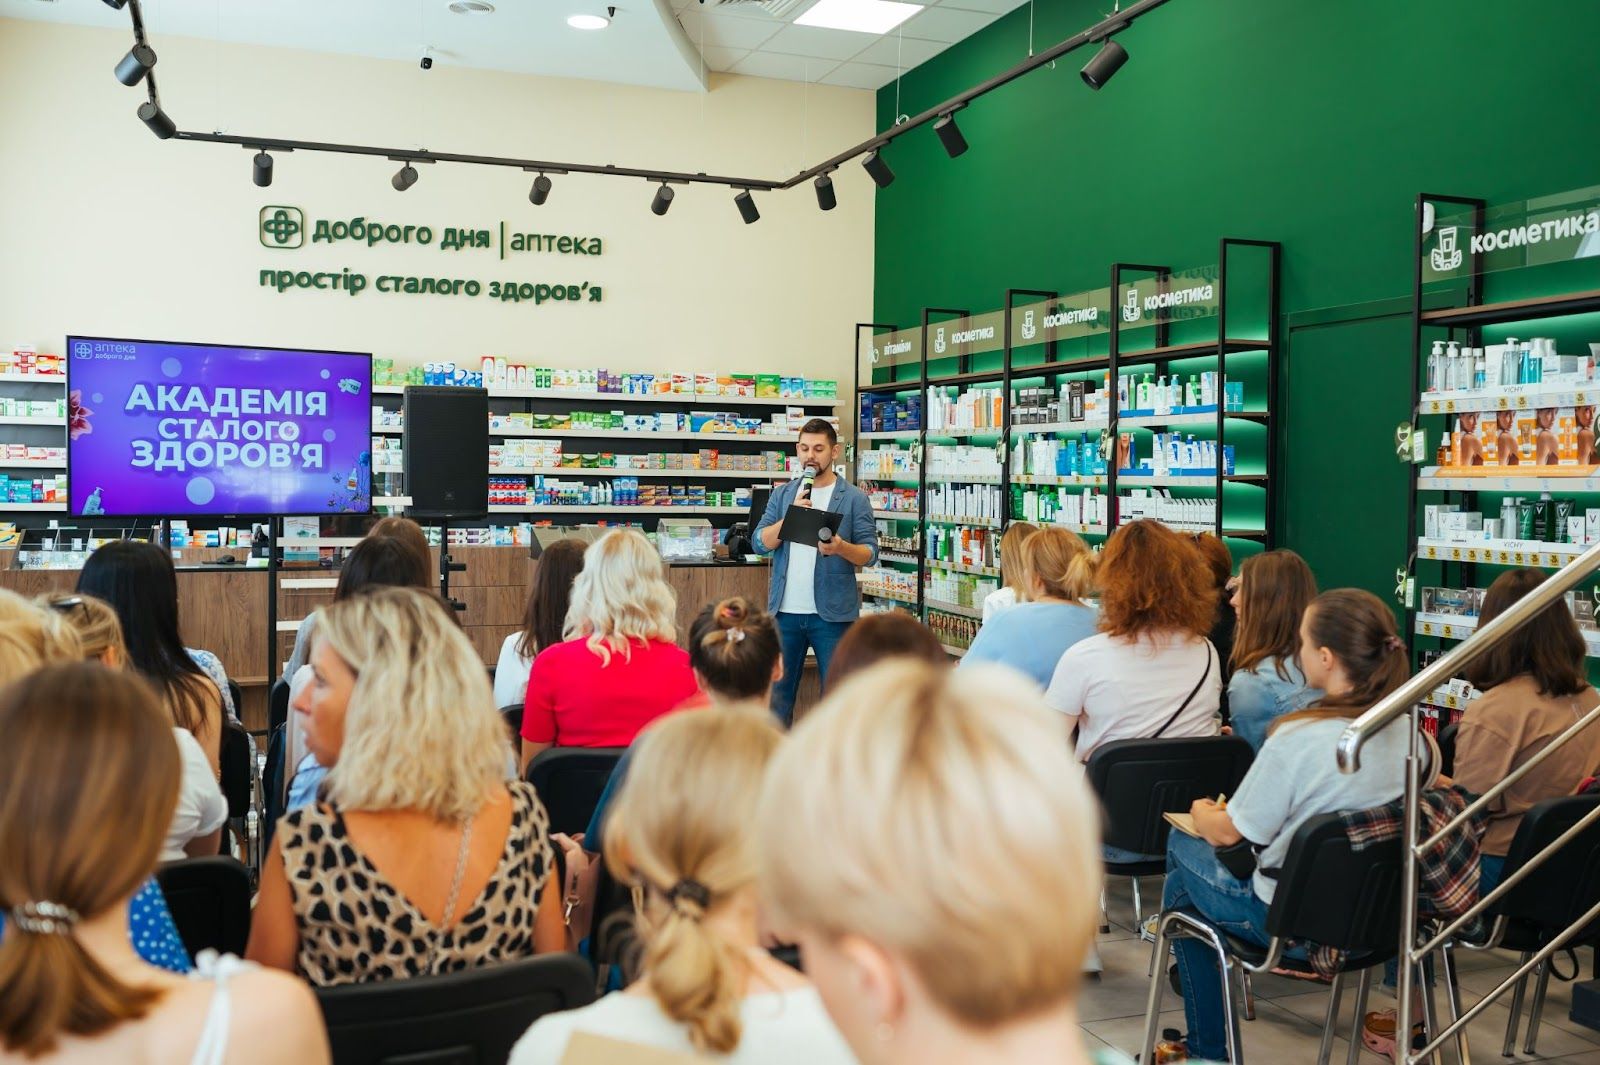 Академія Сталого Здоров'я: как "Аптека Доброго Дня" помогает украинцам заботиться о себе